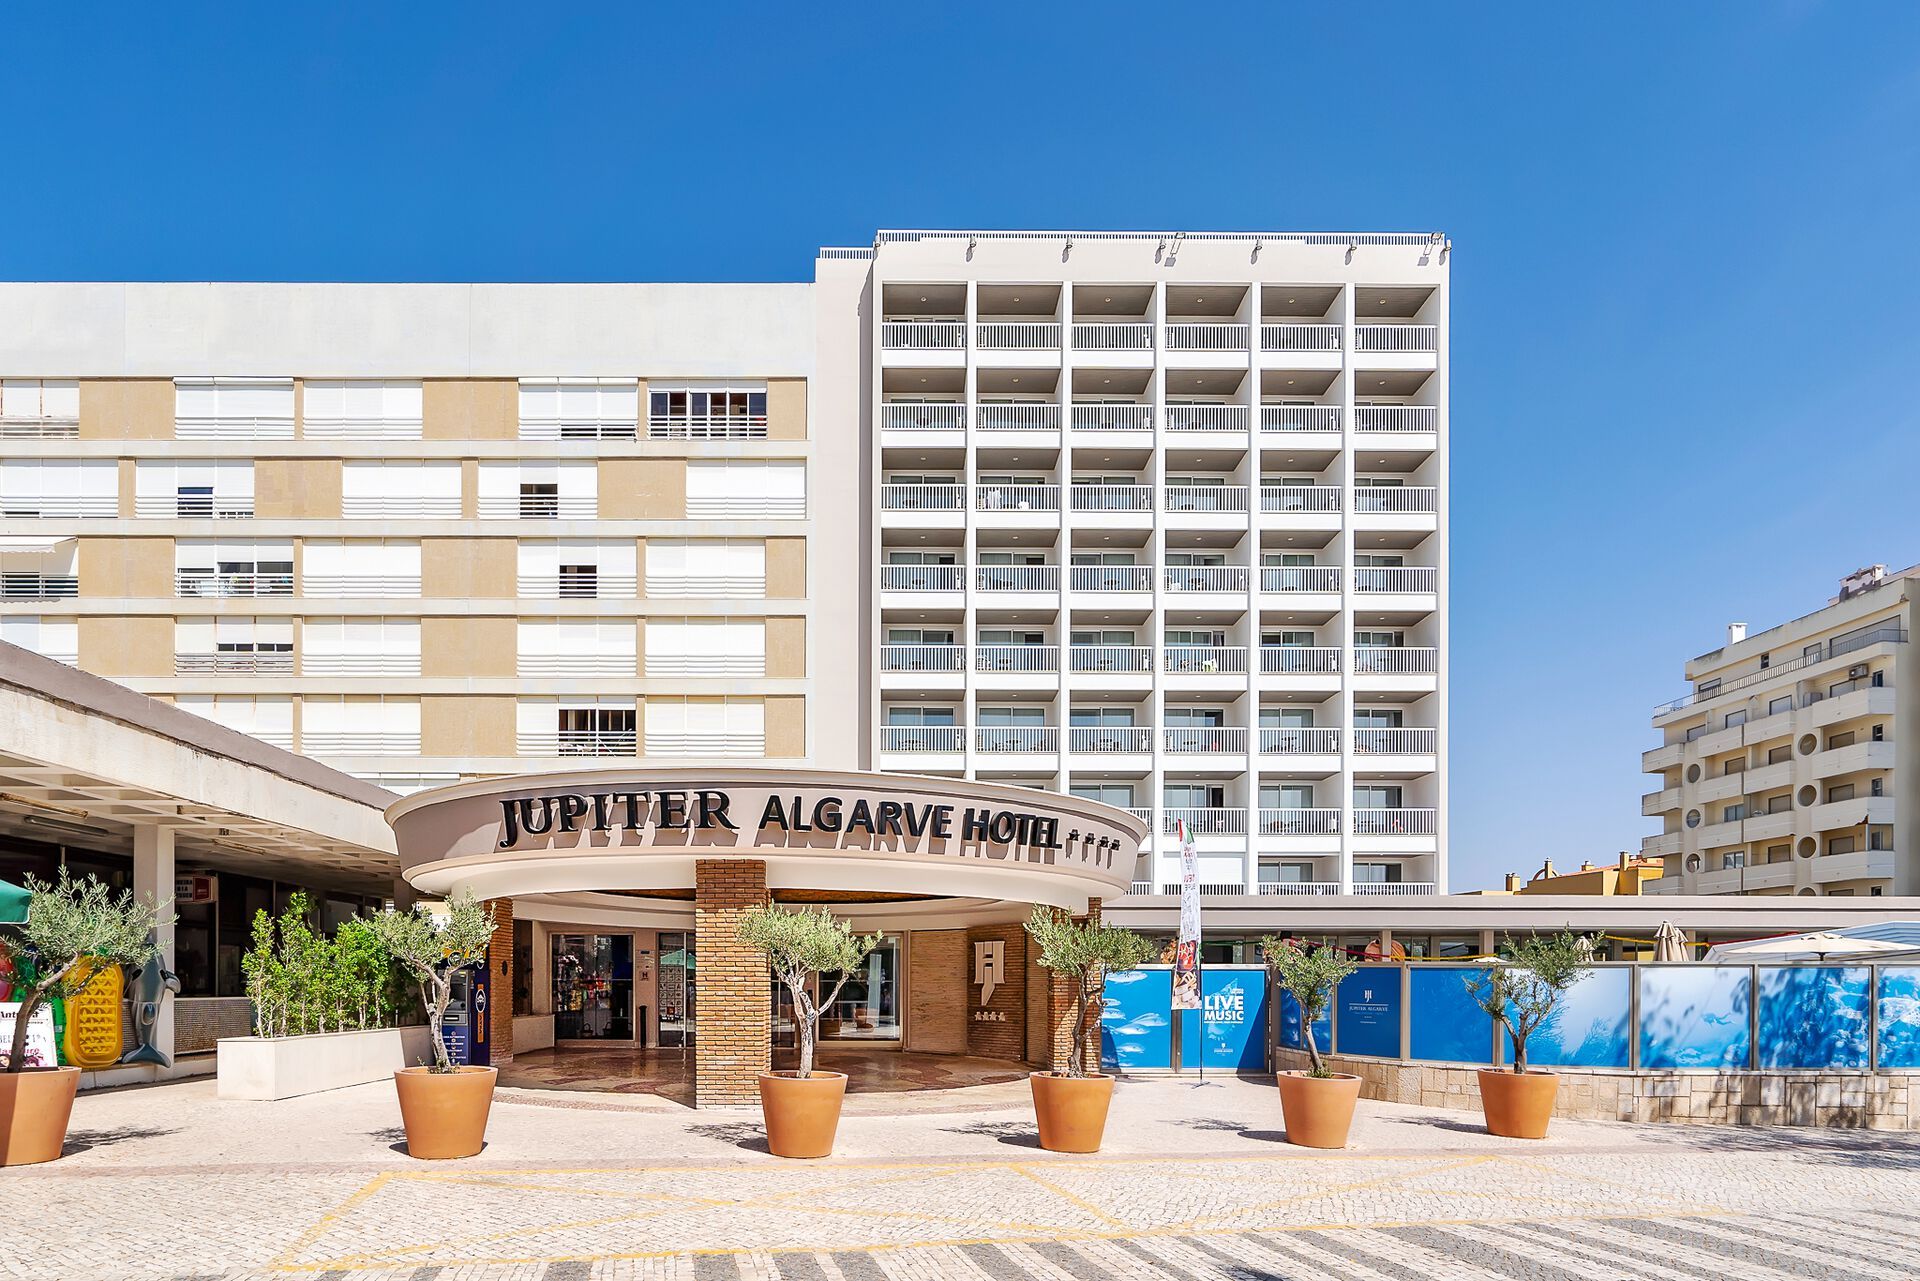 Portugal - Algarve - Faro - Jupiter Algarve Hotel 4*